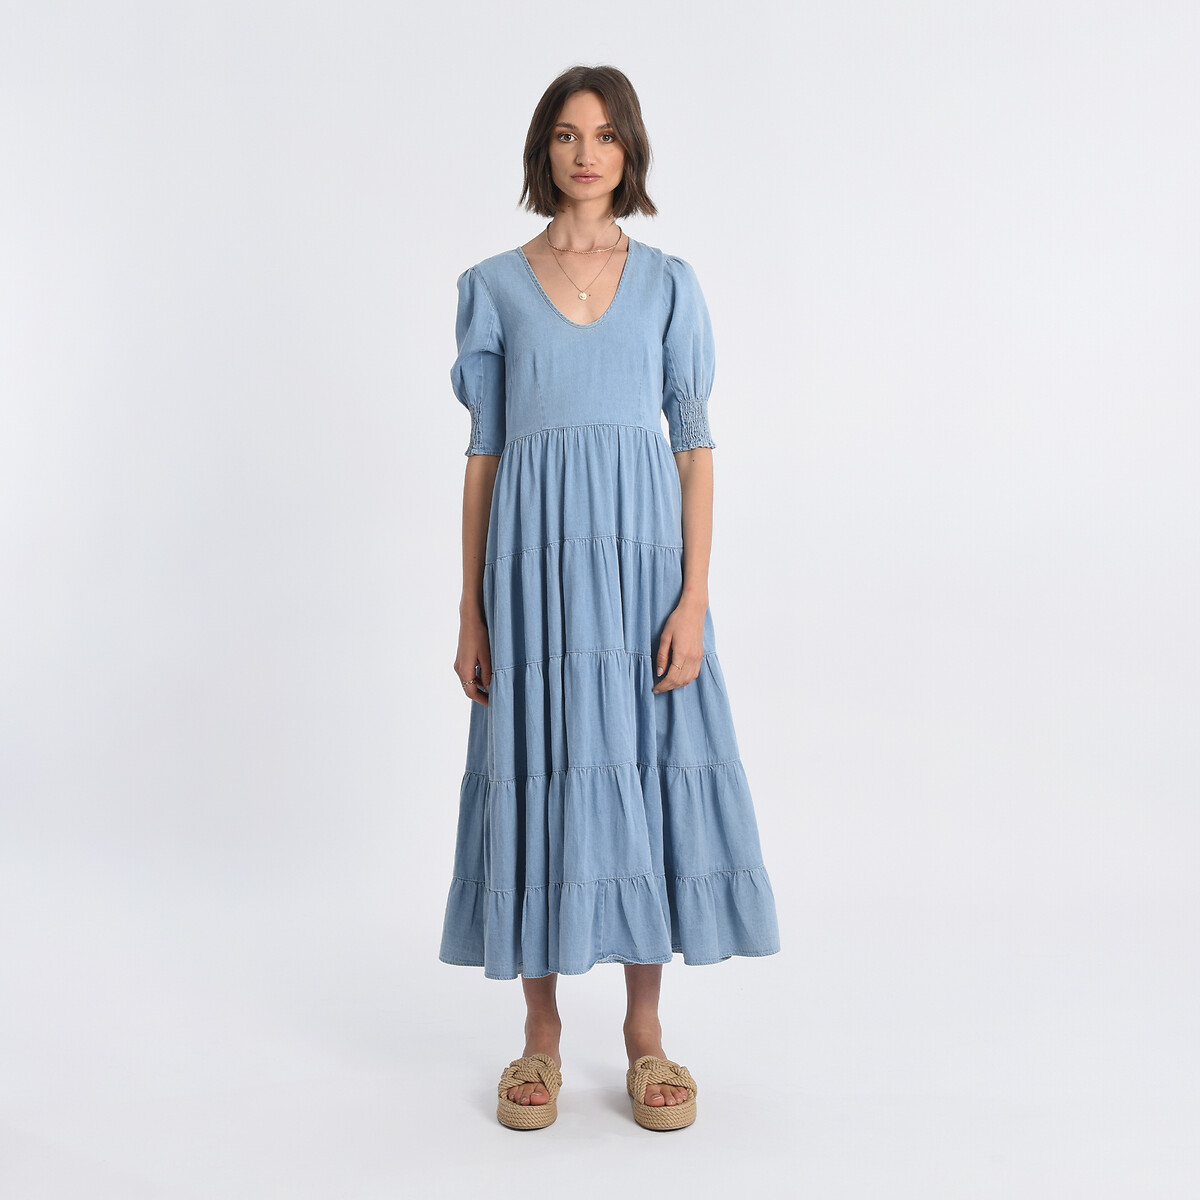 Платье Длинное с воланами L синий LaRedoute, размер L